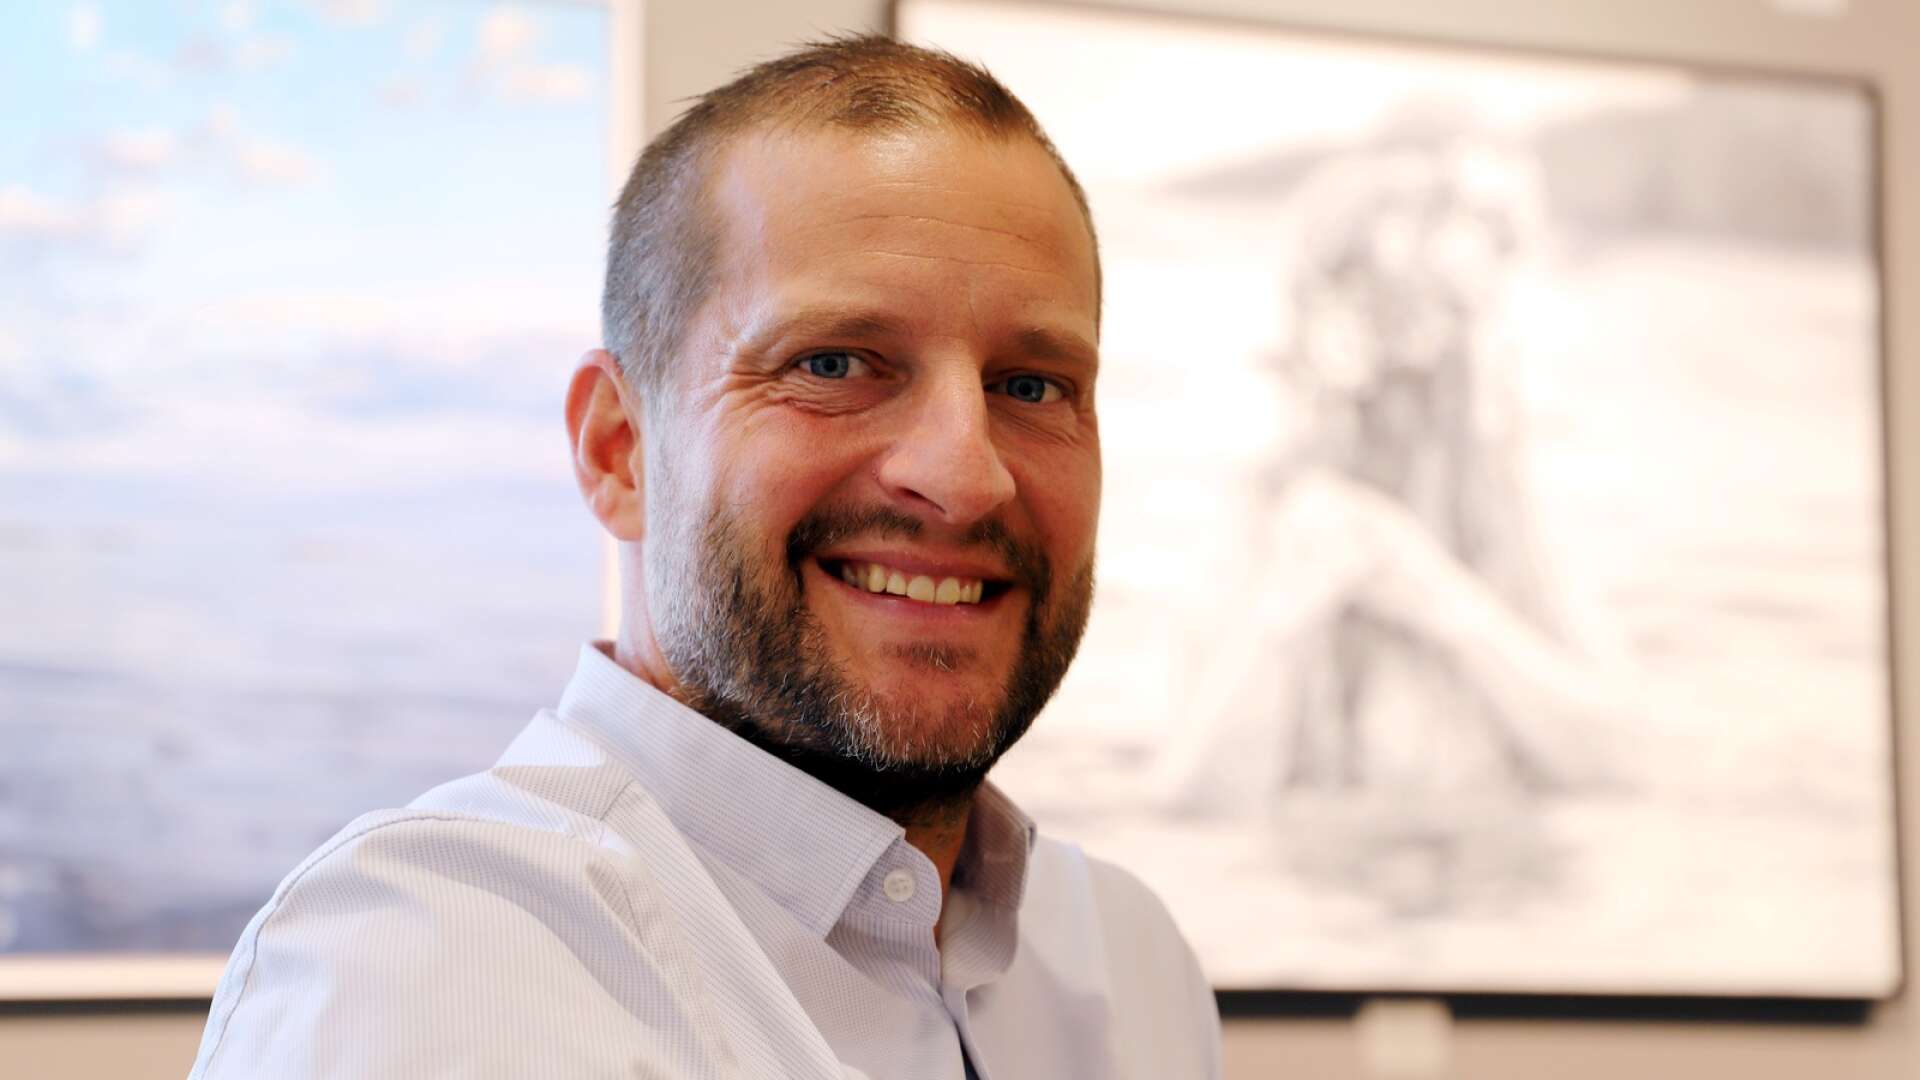 Konstnären Mathias Frykholm är nyinvald medlem i Värmlands konstnärsförbund och dessutom aktiv i – tills nyss – två gallerier. I september kliver han ur ett av dem, för att säkra mer tid till sitt konstnärliga skapande.